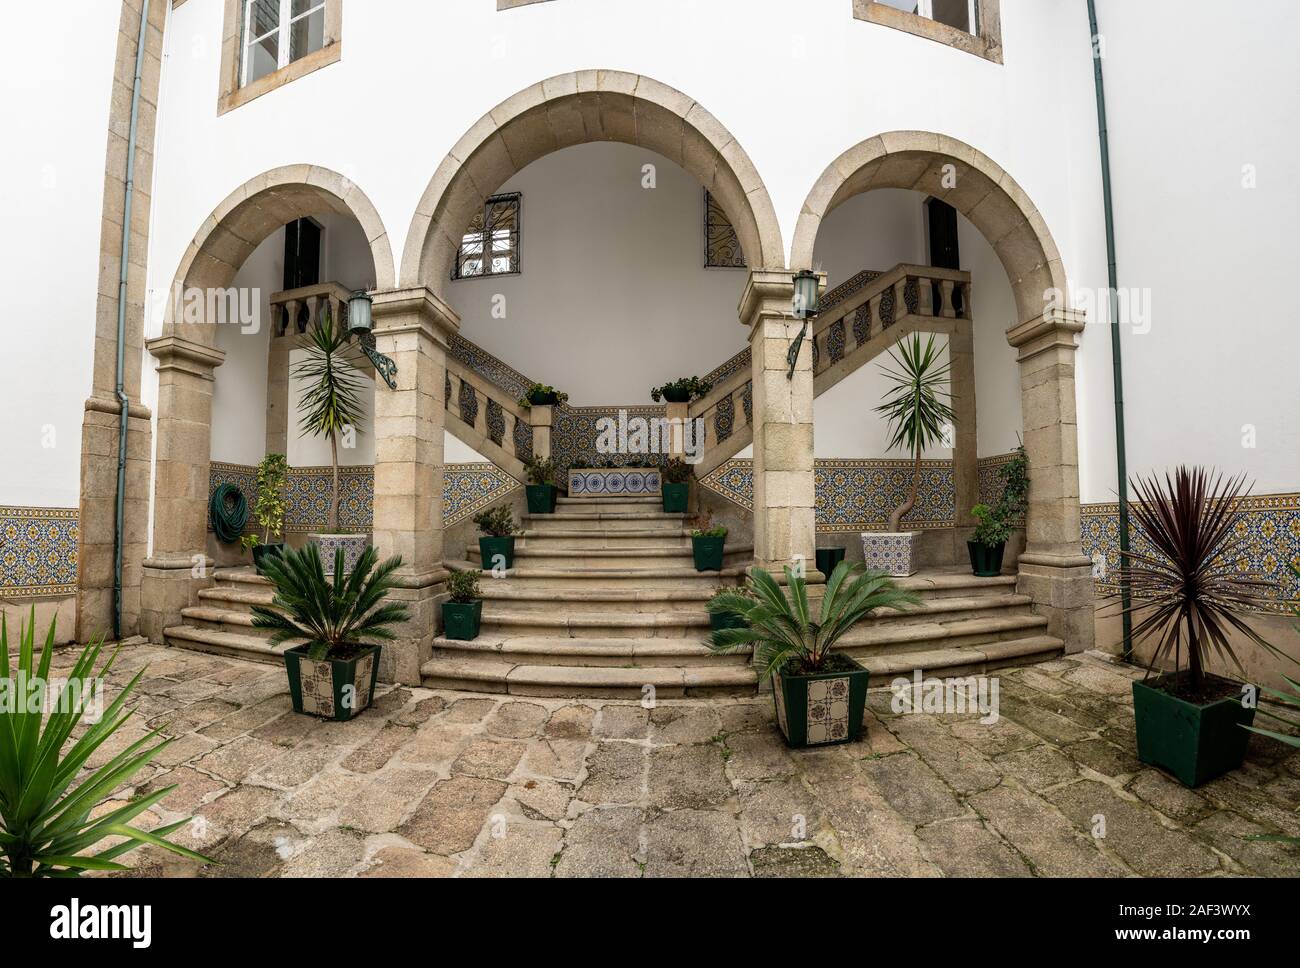 Guimaraes, Portugal - 18 August 2019: Interior courtyard of the Nossa Senhora do Carmo church with steps Stock Photo